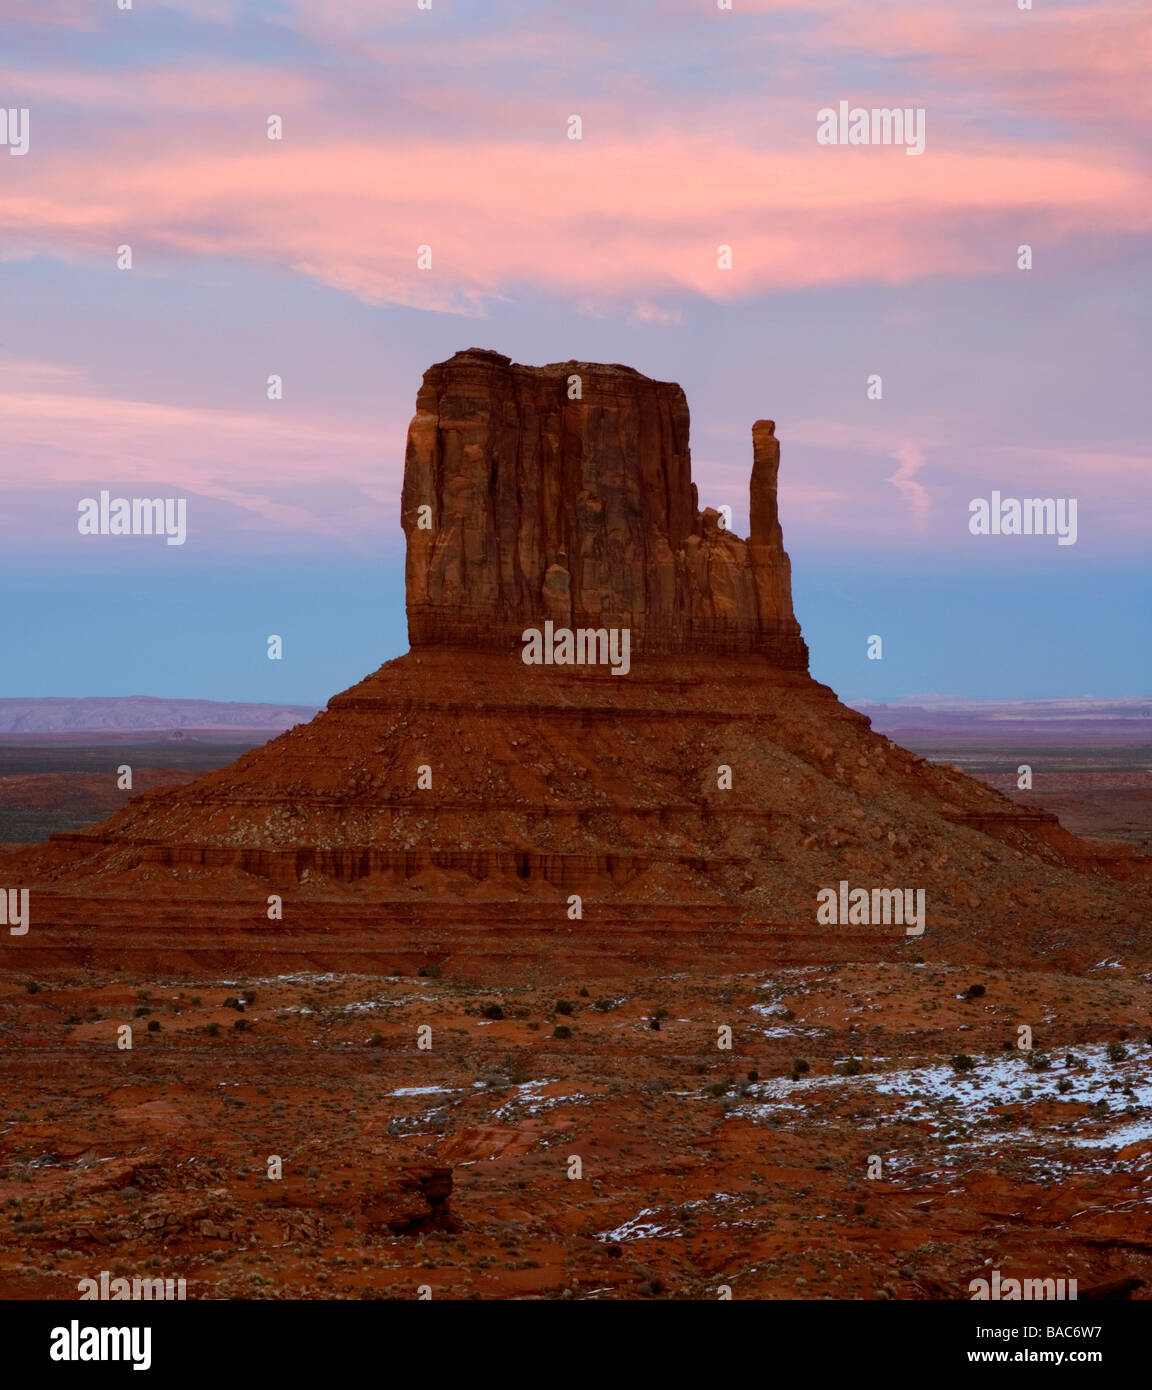 Monument Valley Navajo Tribal Park au crépuscule dans l'Arizona, USA. Banque D'Images